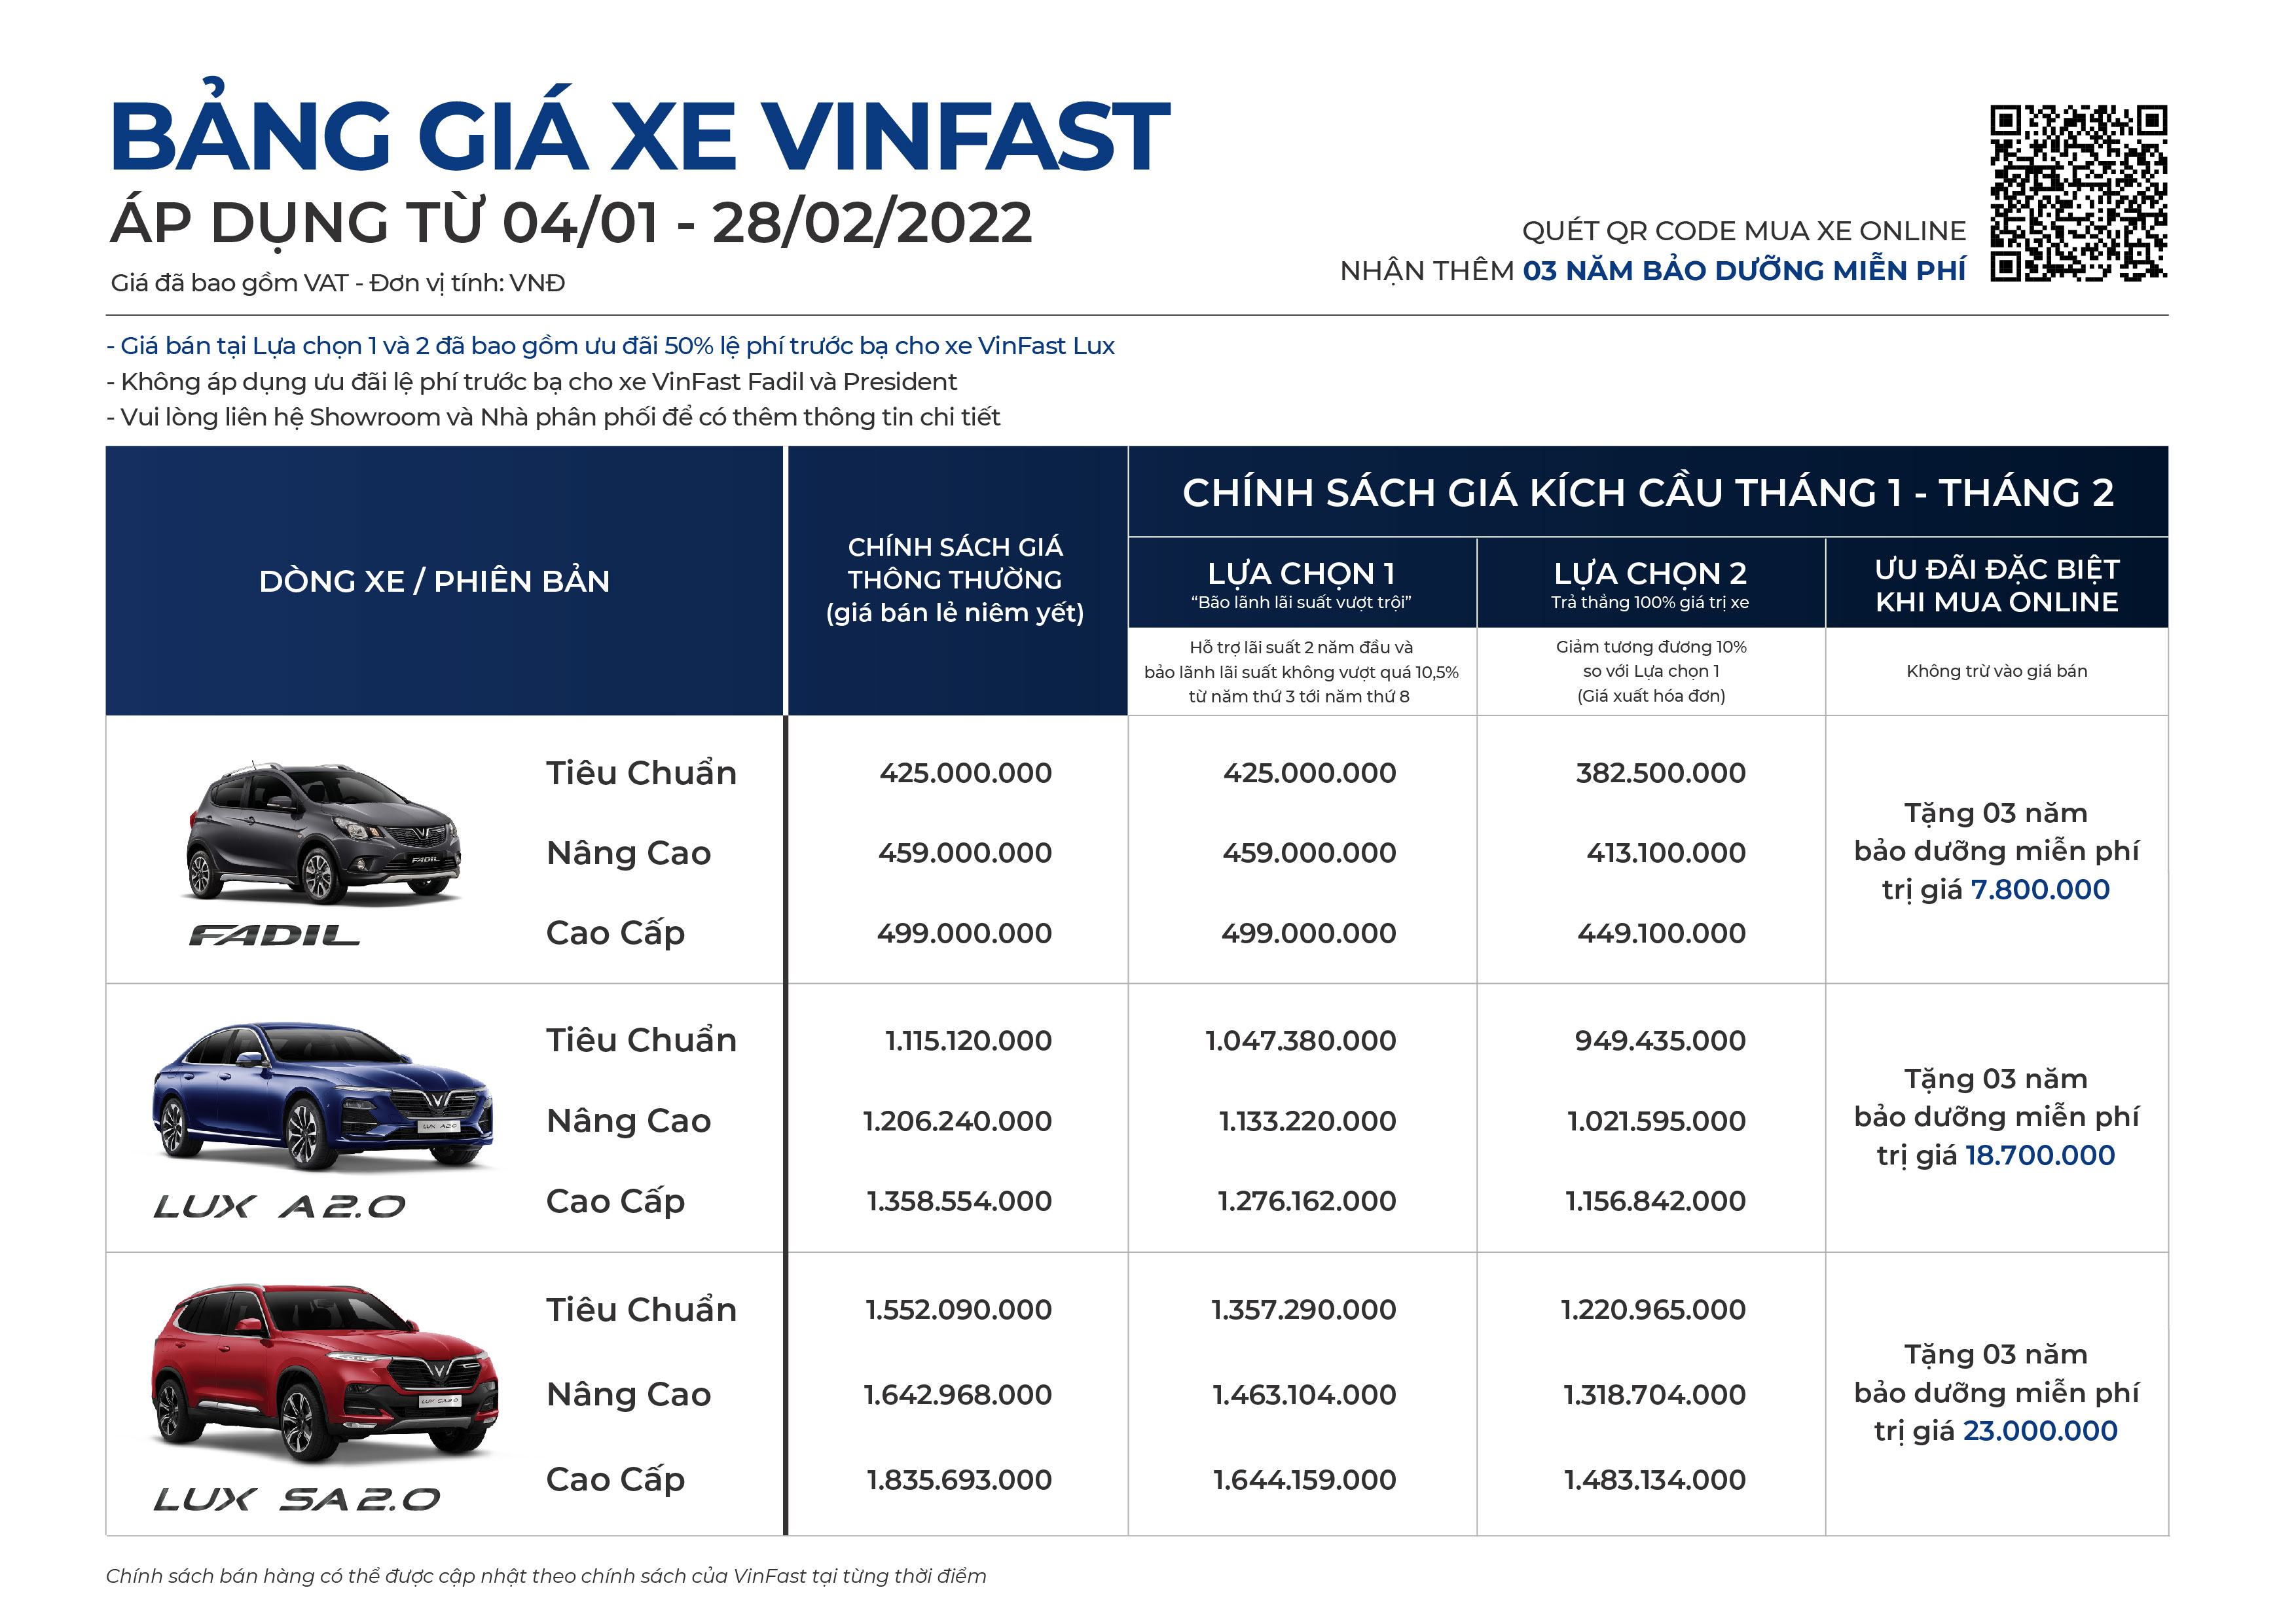 Doanh số xe VinFast biến động hậu tuyên bố dừng sản xuất xe xăng, VinFast Fadil vẫn vững ngôi đầu